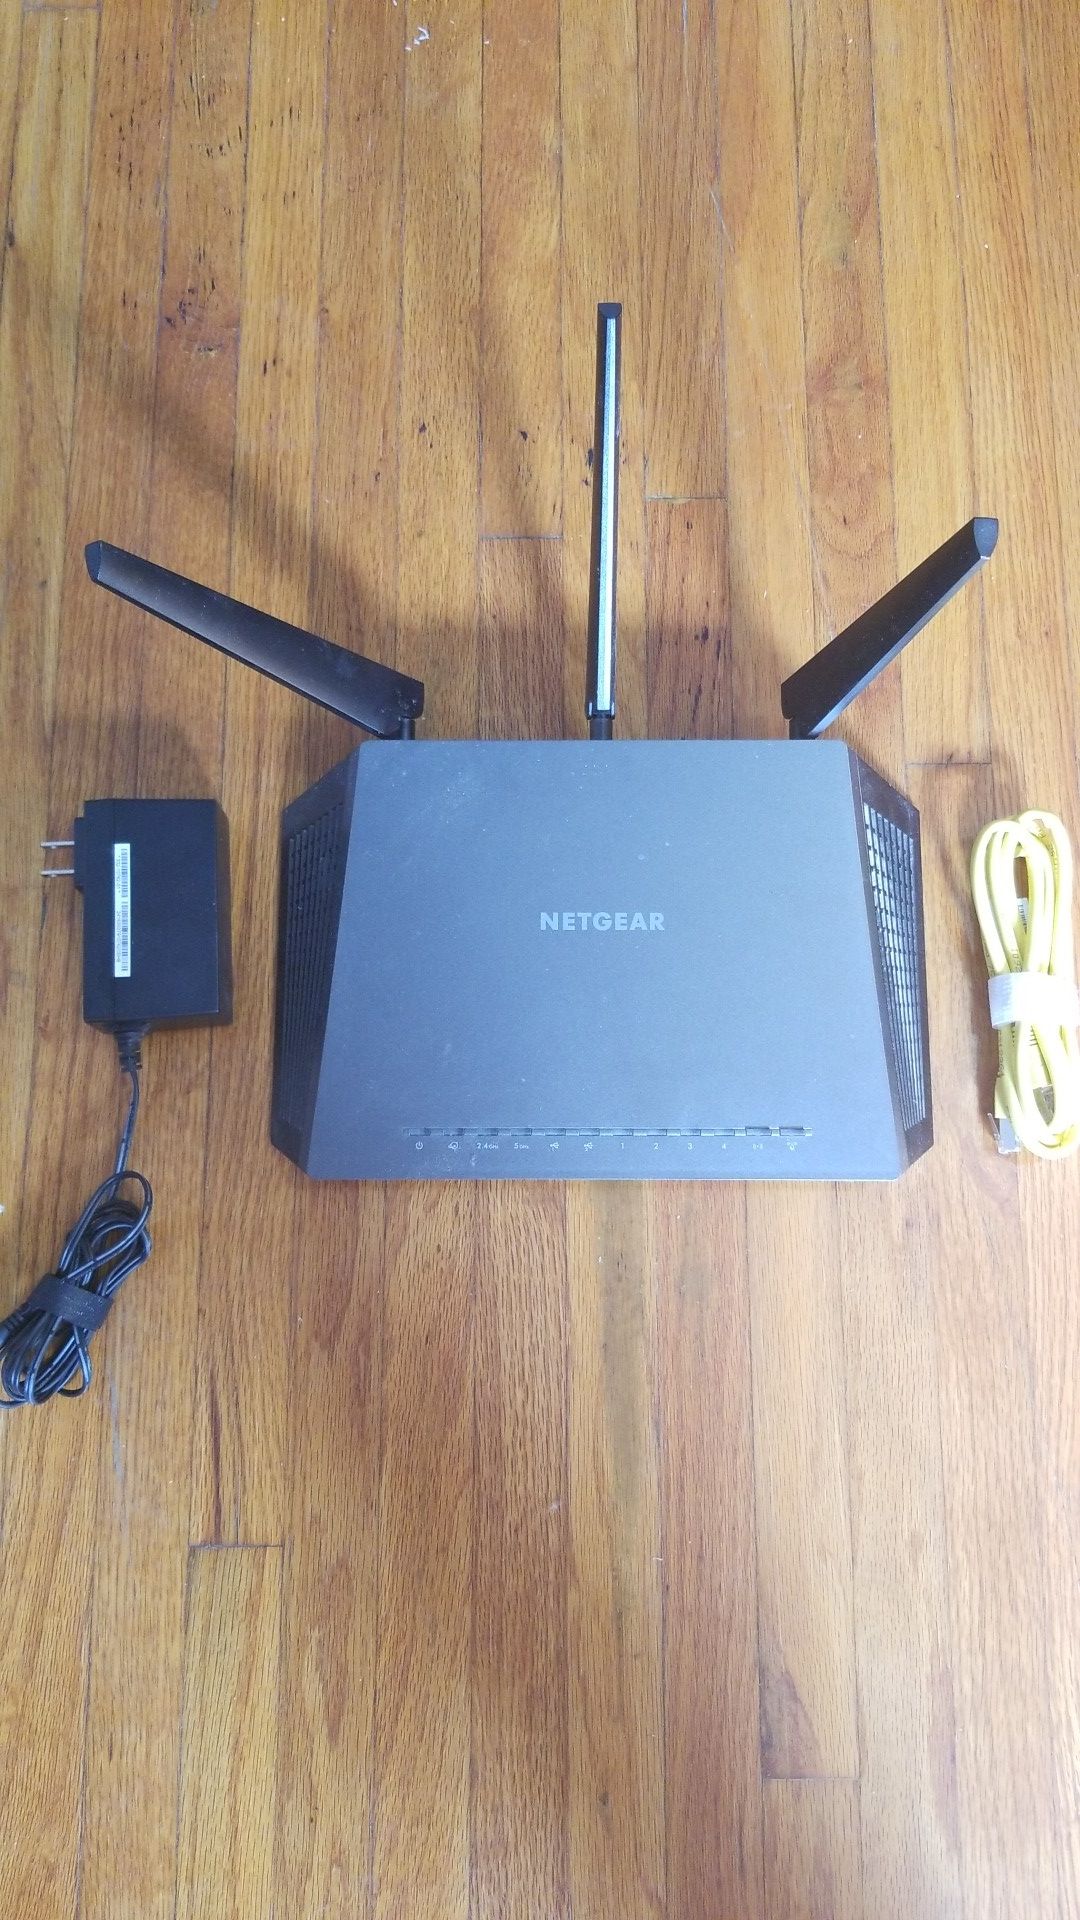 Netgear Nighthawk Smart WiFi Router (R7000) - AC 1900